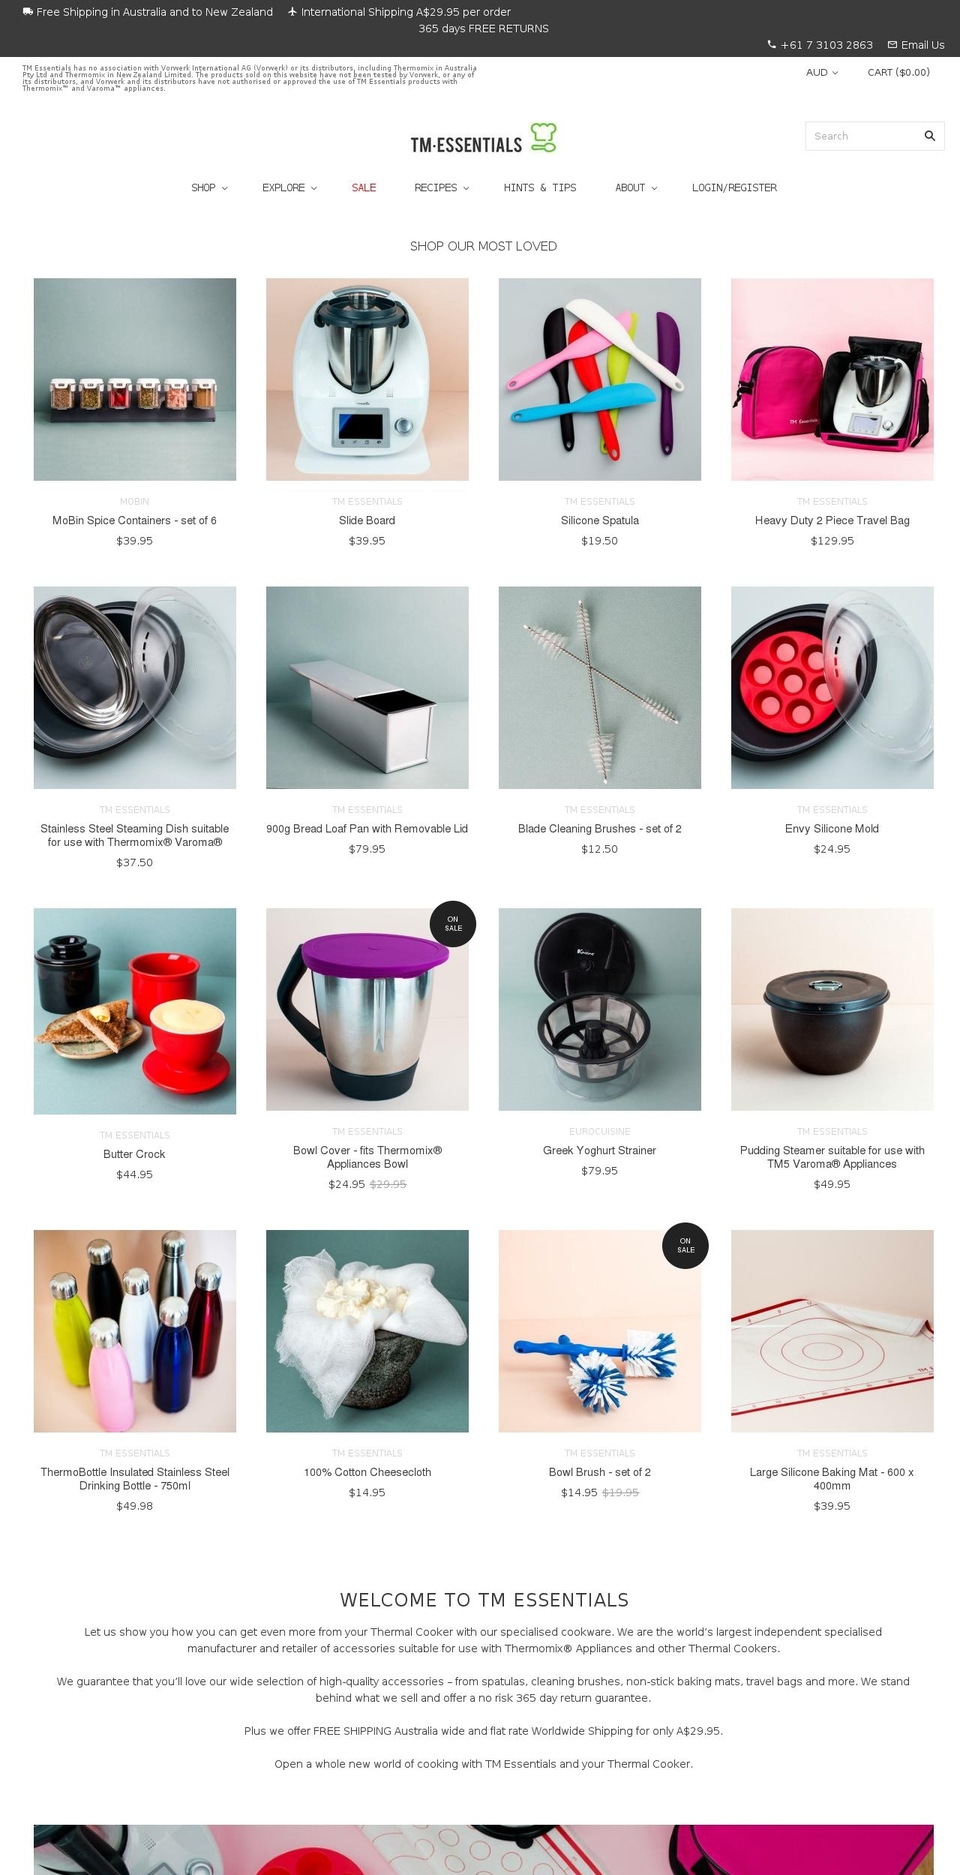 tm-essentials.com.au shopify website screenshot